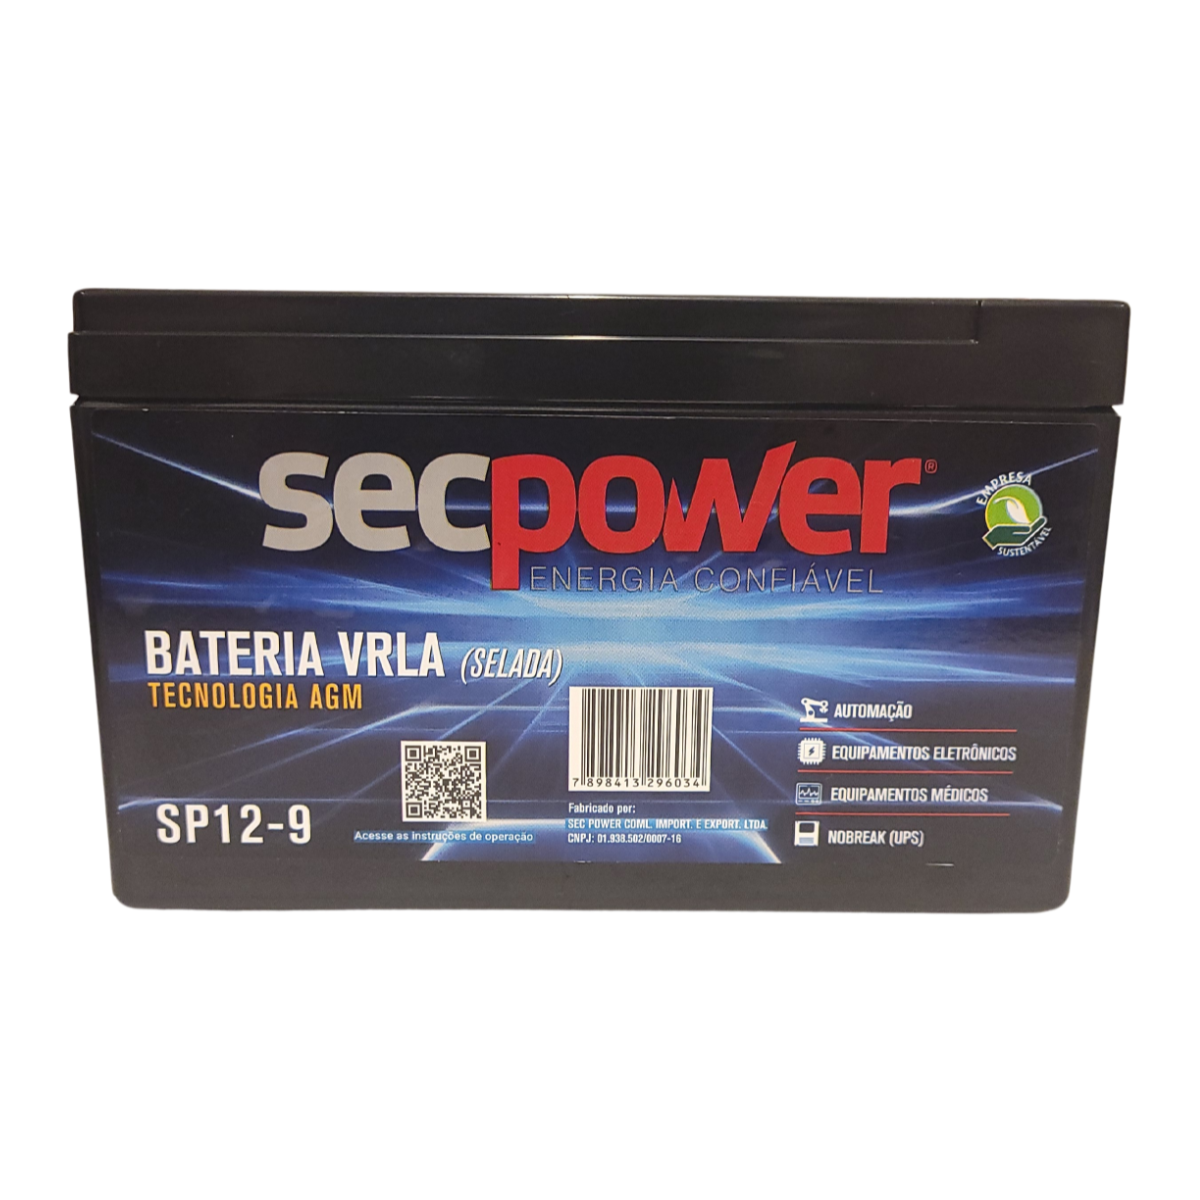 Bateria Secpower P/nobreak 12v 9.0ah Sp 1290 - 1